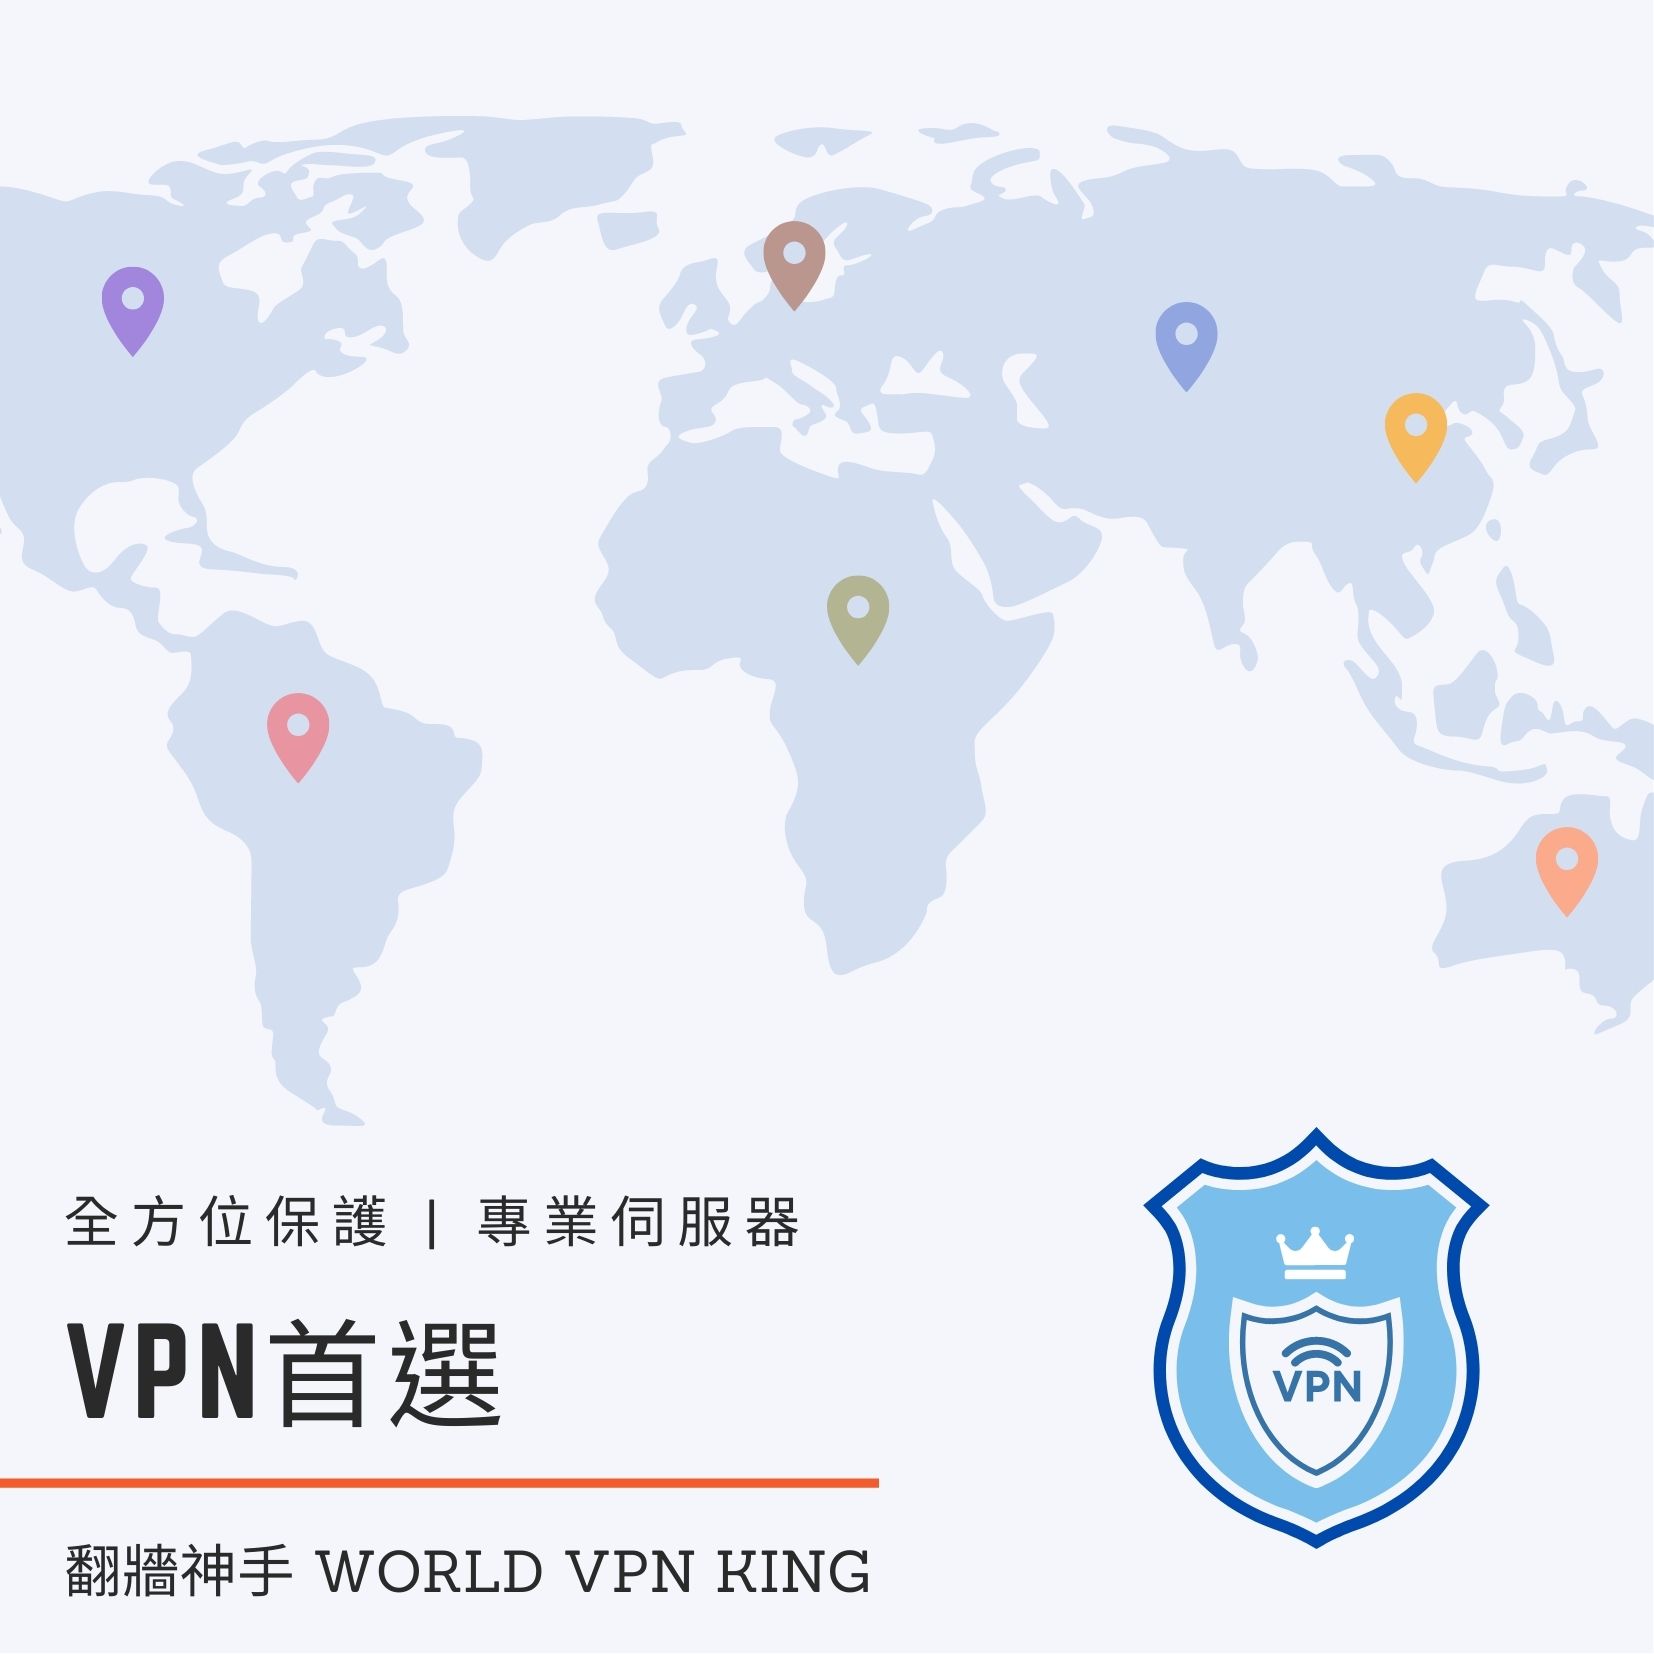 中國大陸翻牆 中國越獄翻牆 VPN